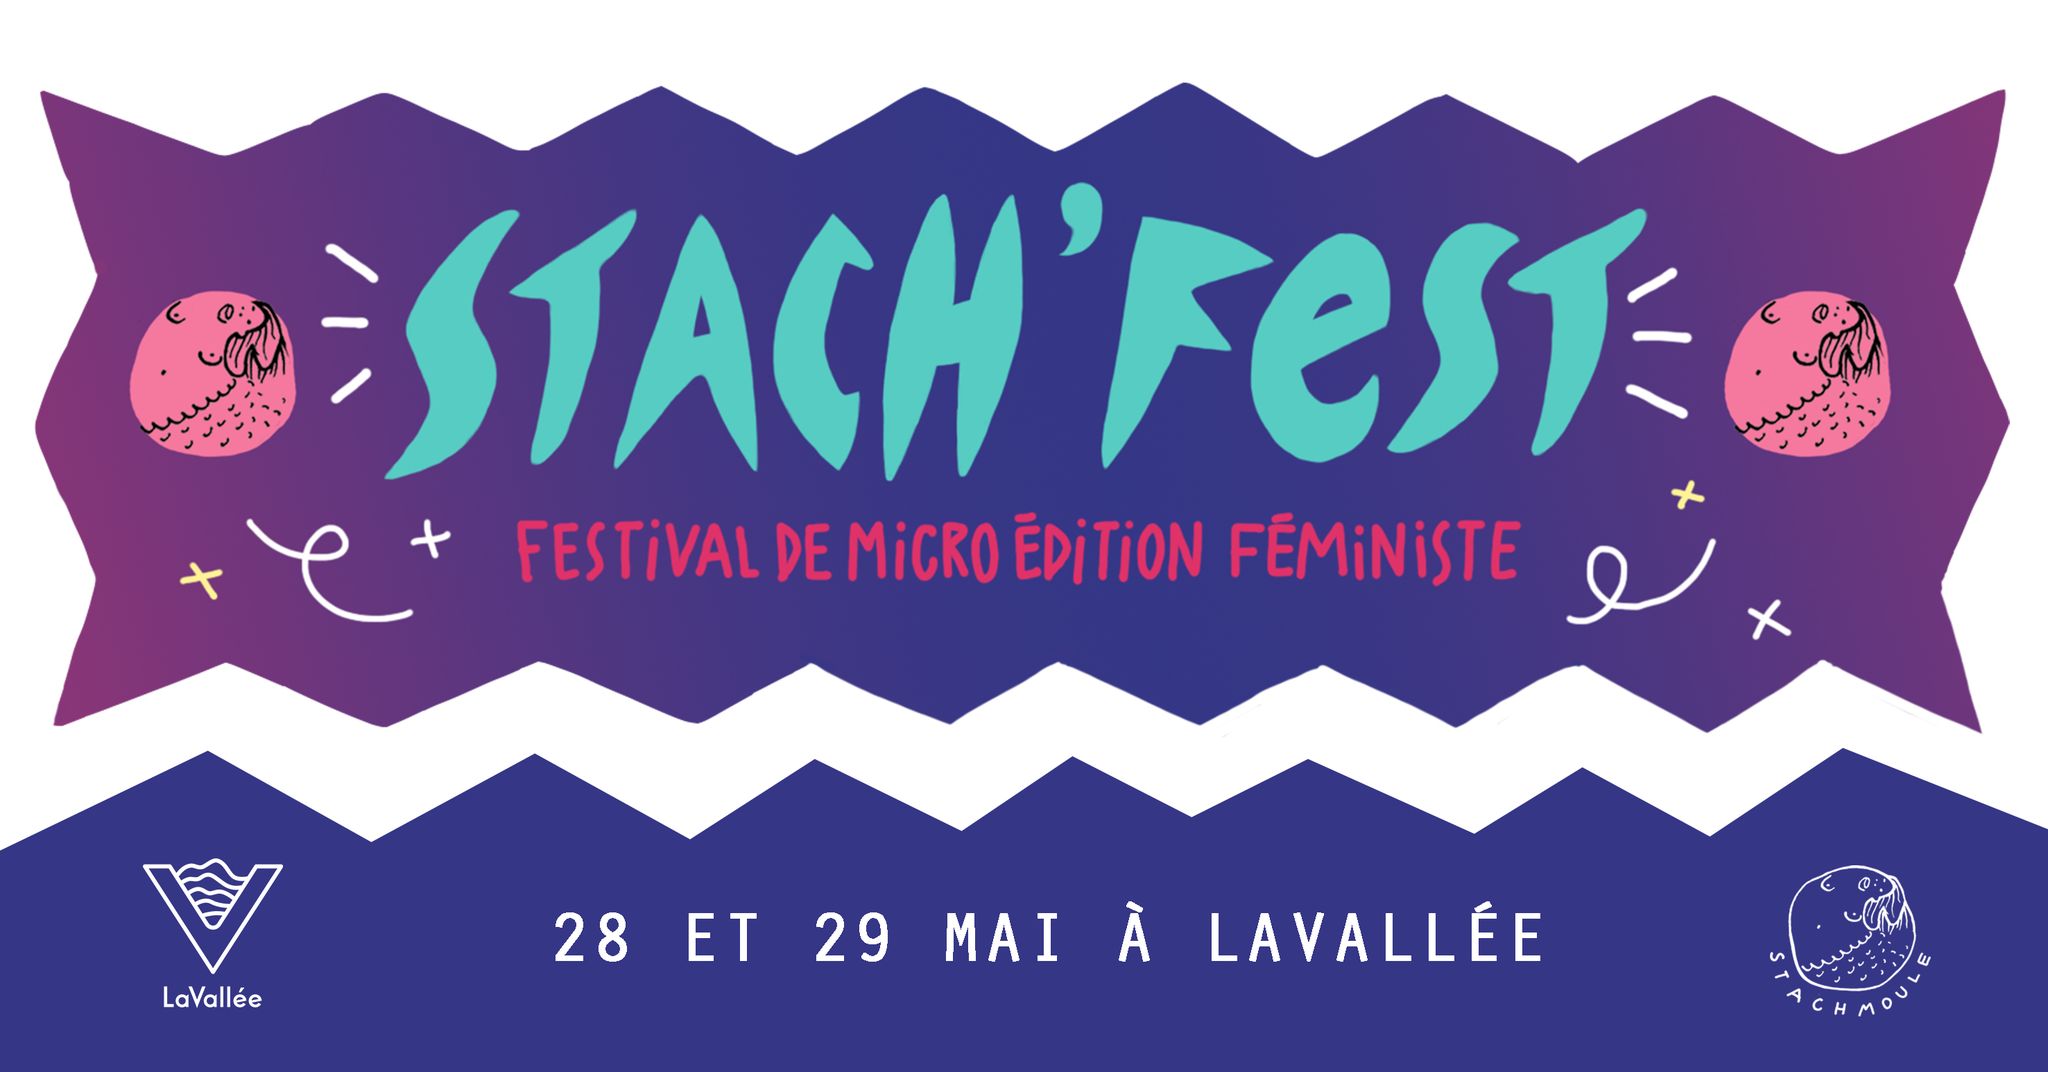 Stach'fest - Festival de micro-édition féministe